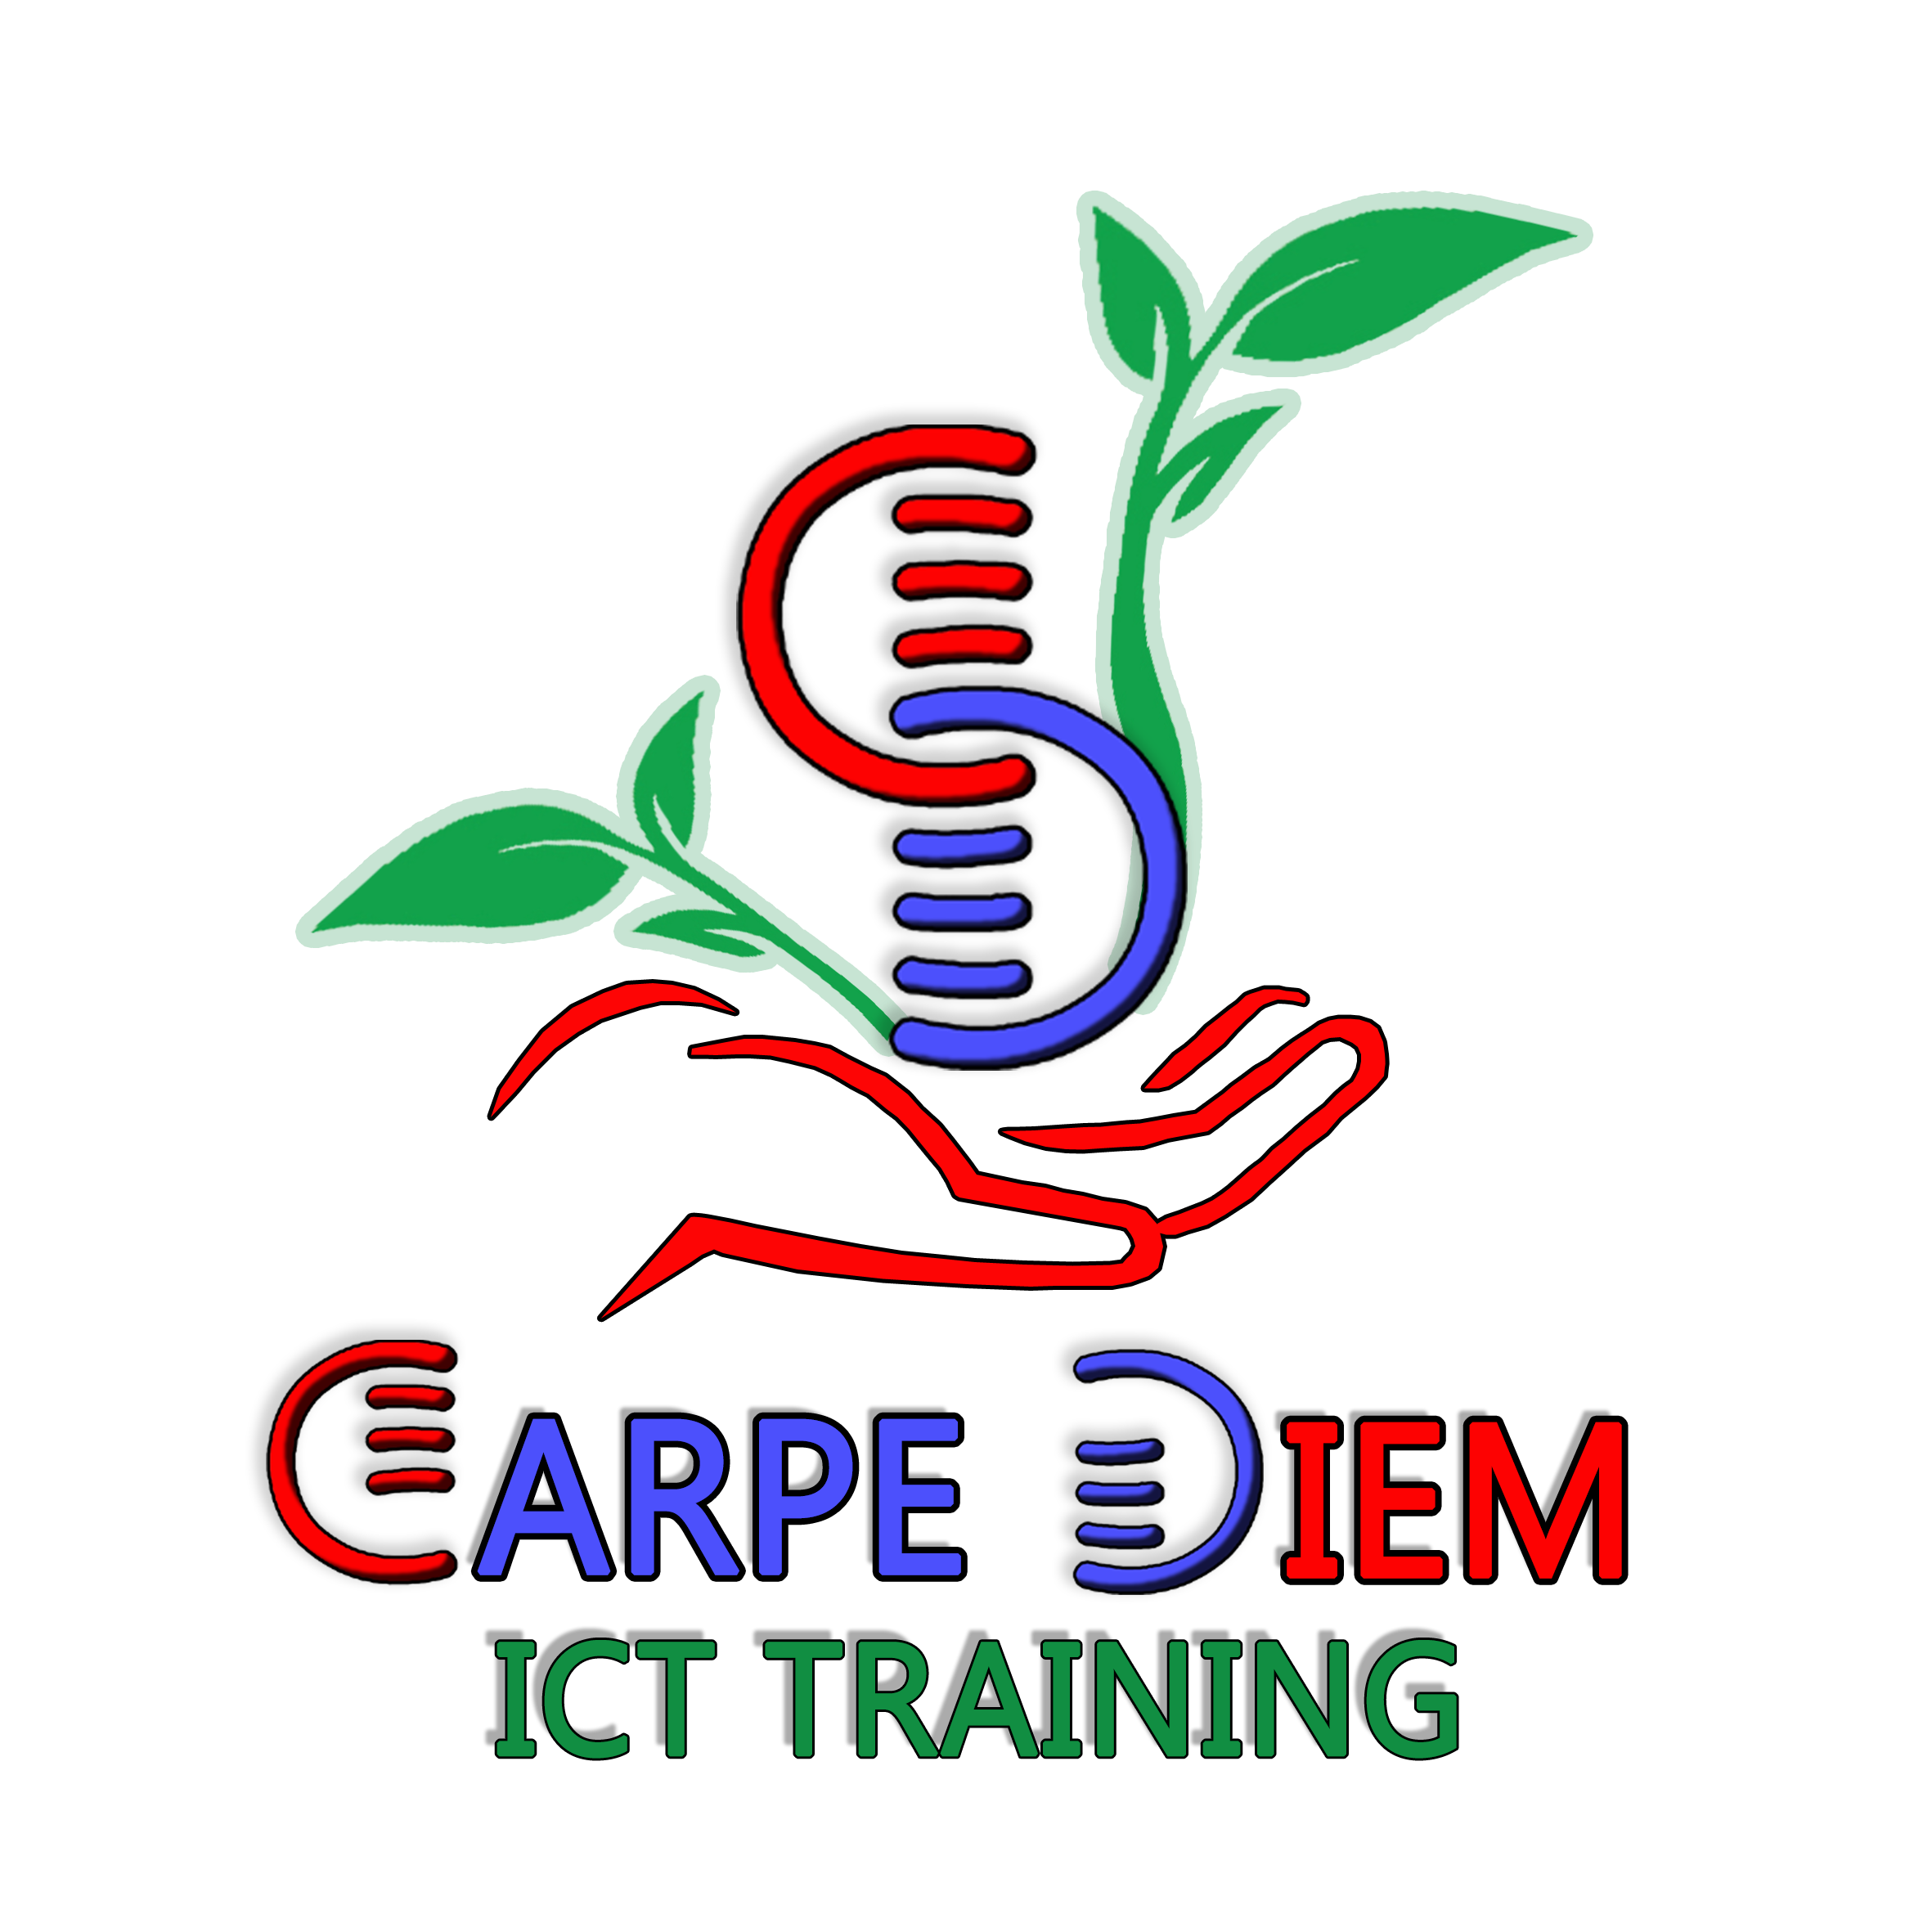 Carpe Diem ICT Training